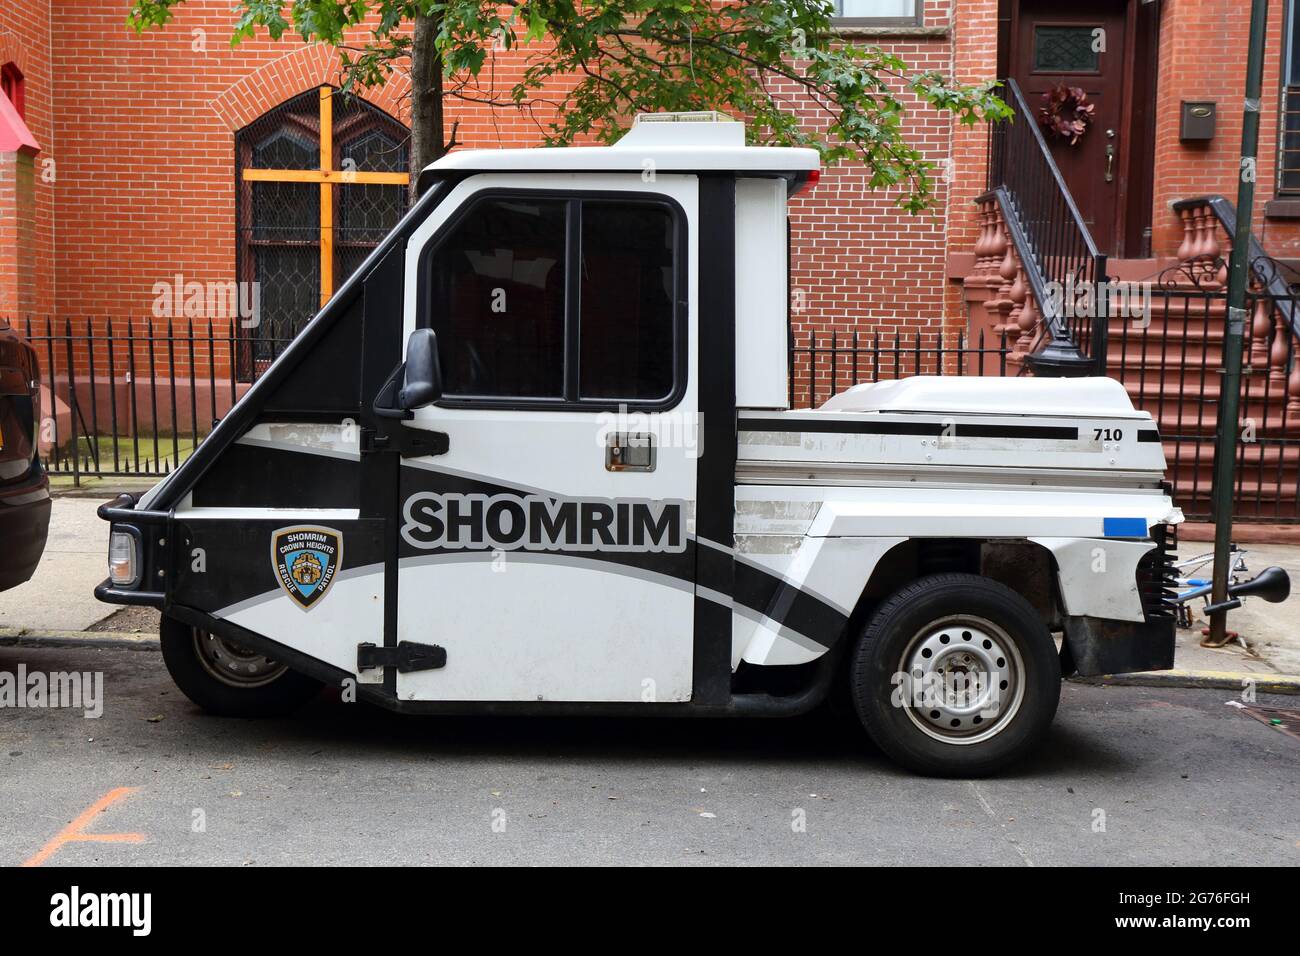 Ein Crown Heights Shomrim 3-Rad Scooter Patrouillenfahrzeug, das auf einer Straße in Brooklyn geparkt ist. Stockfoto